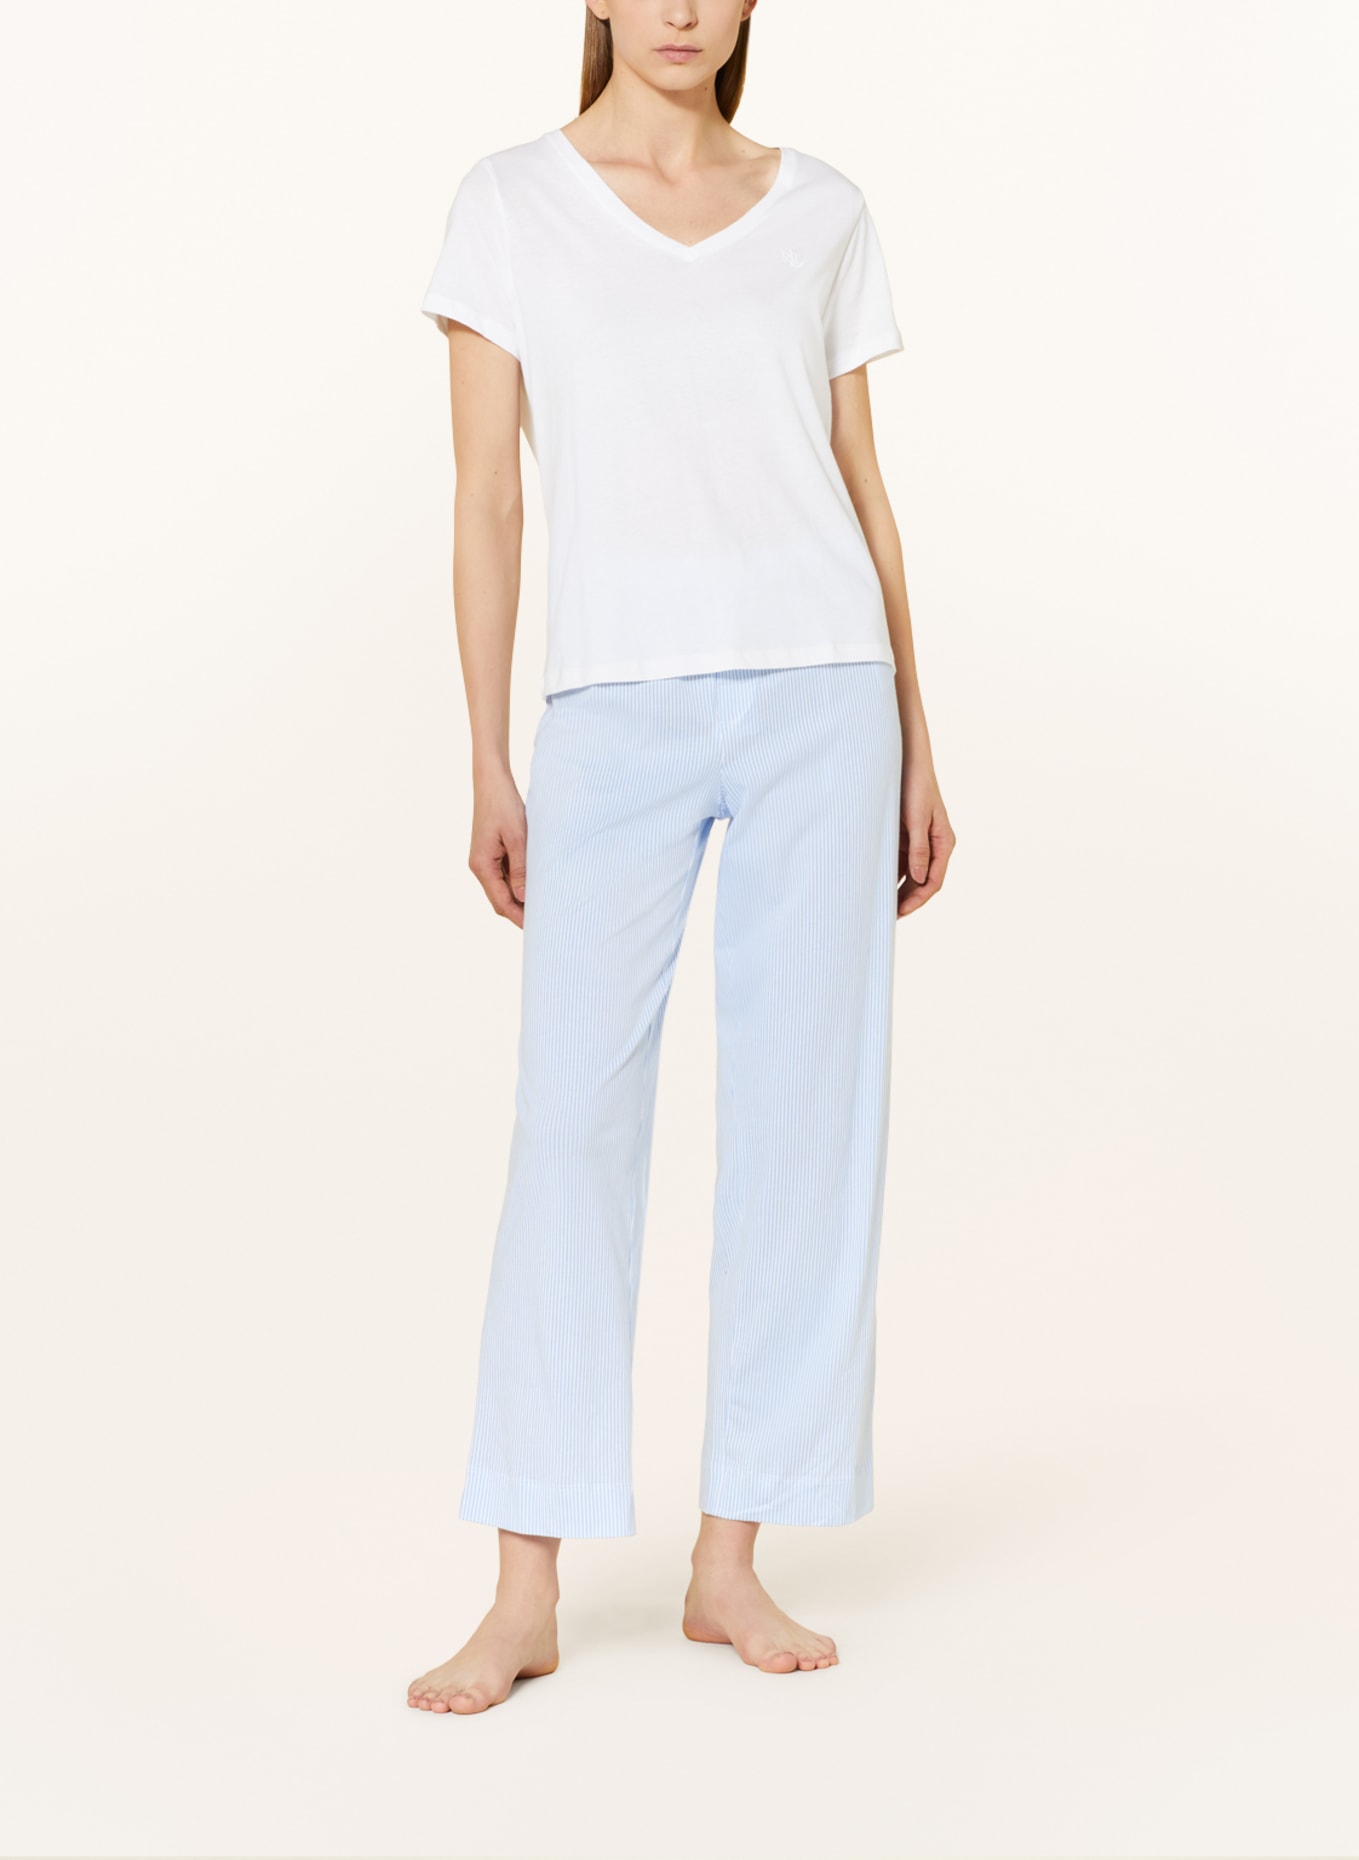 LAUREN RALPH LAUREN Pajama pants, Color: WHITE/ LIGHT BLUE (Image 2)